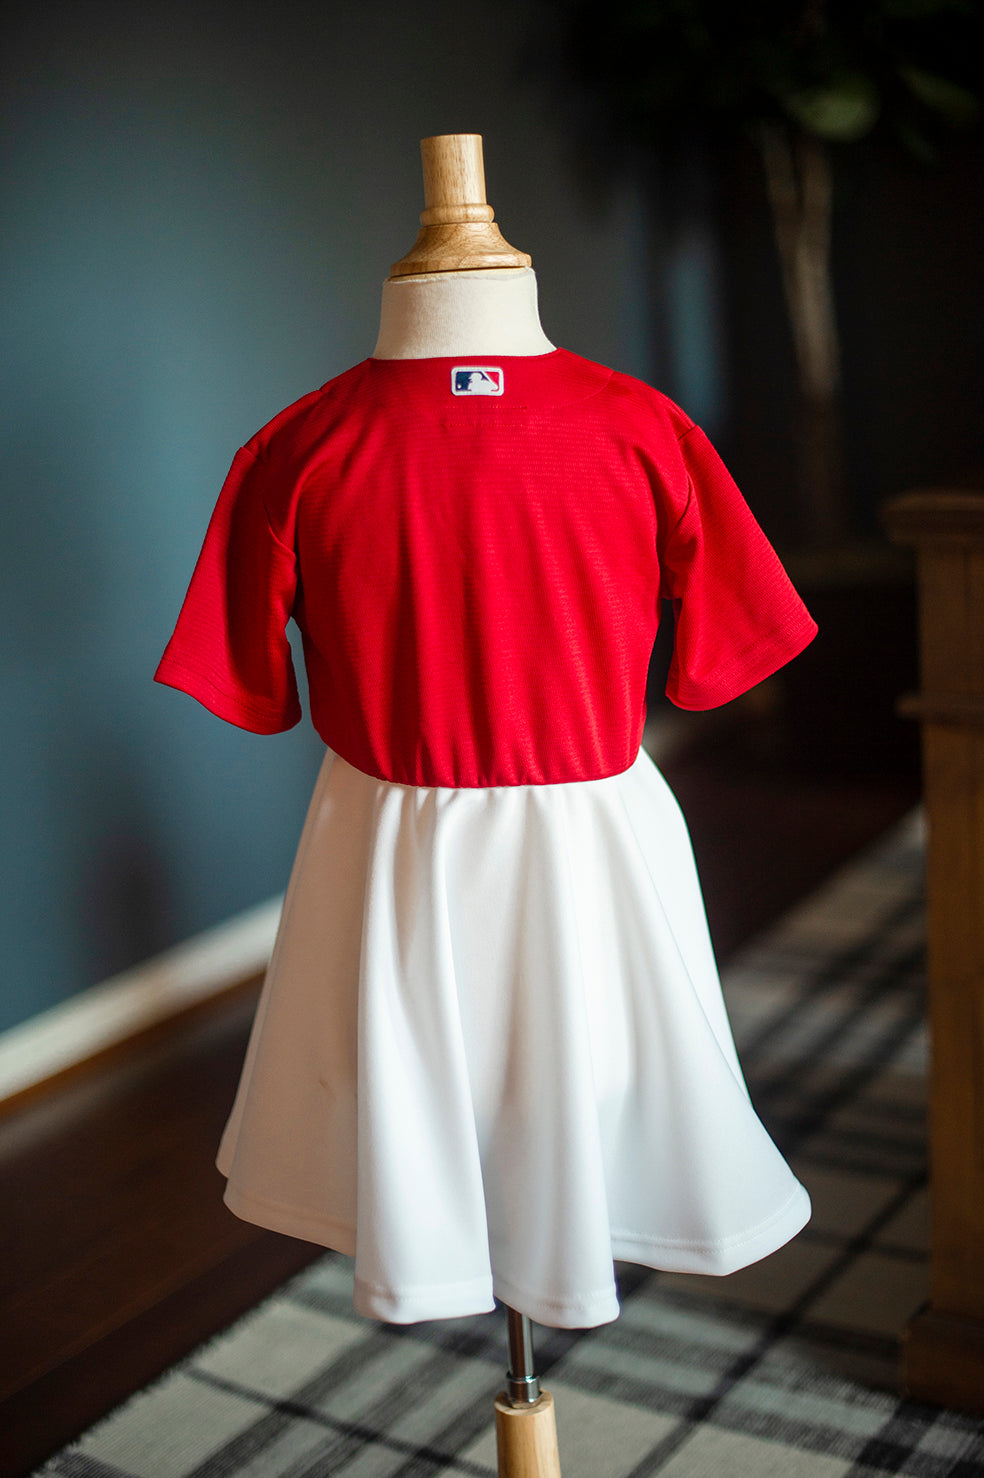 st louis cardinals jersey dress